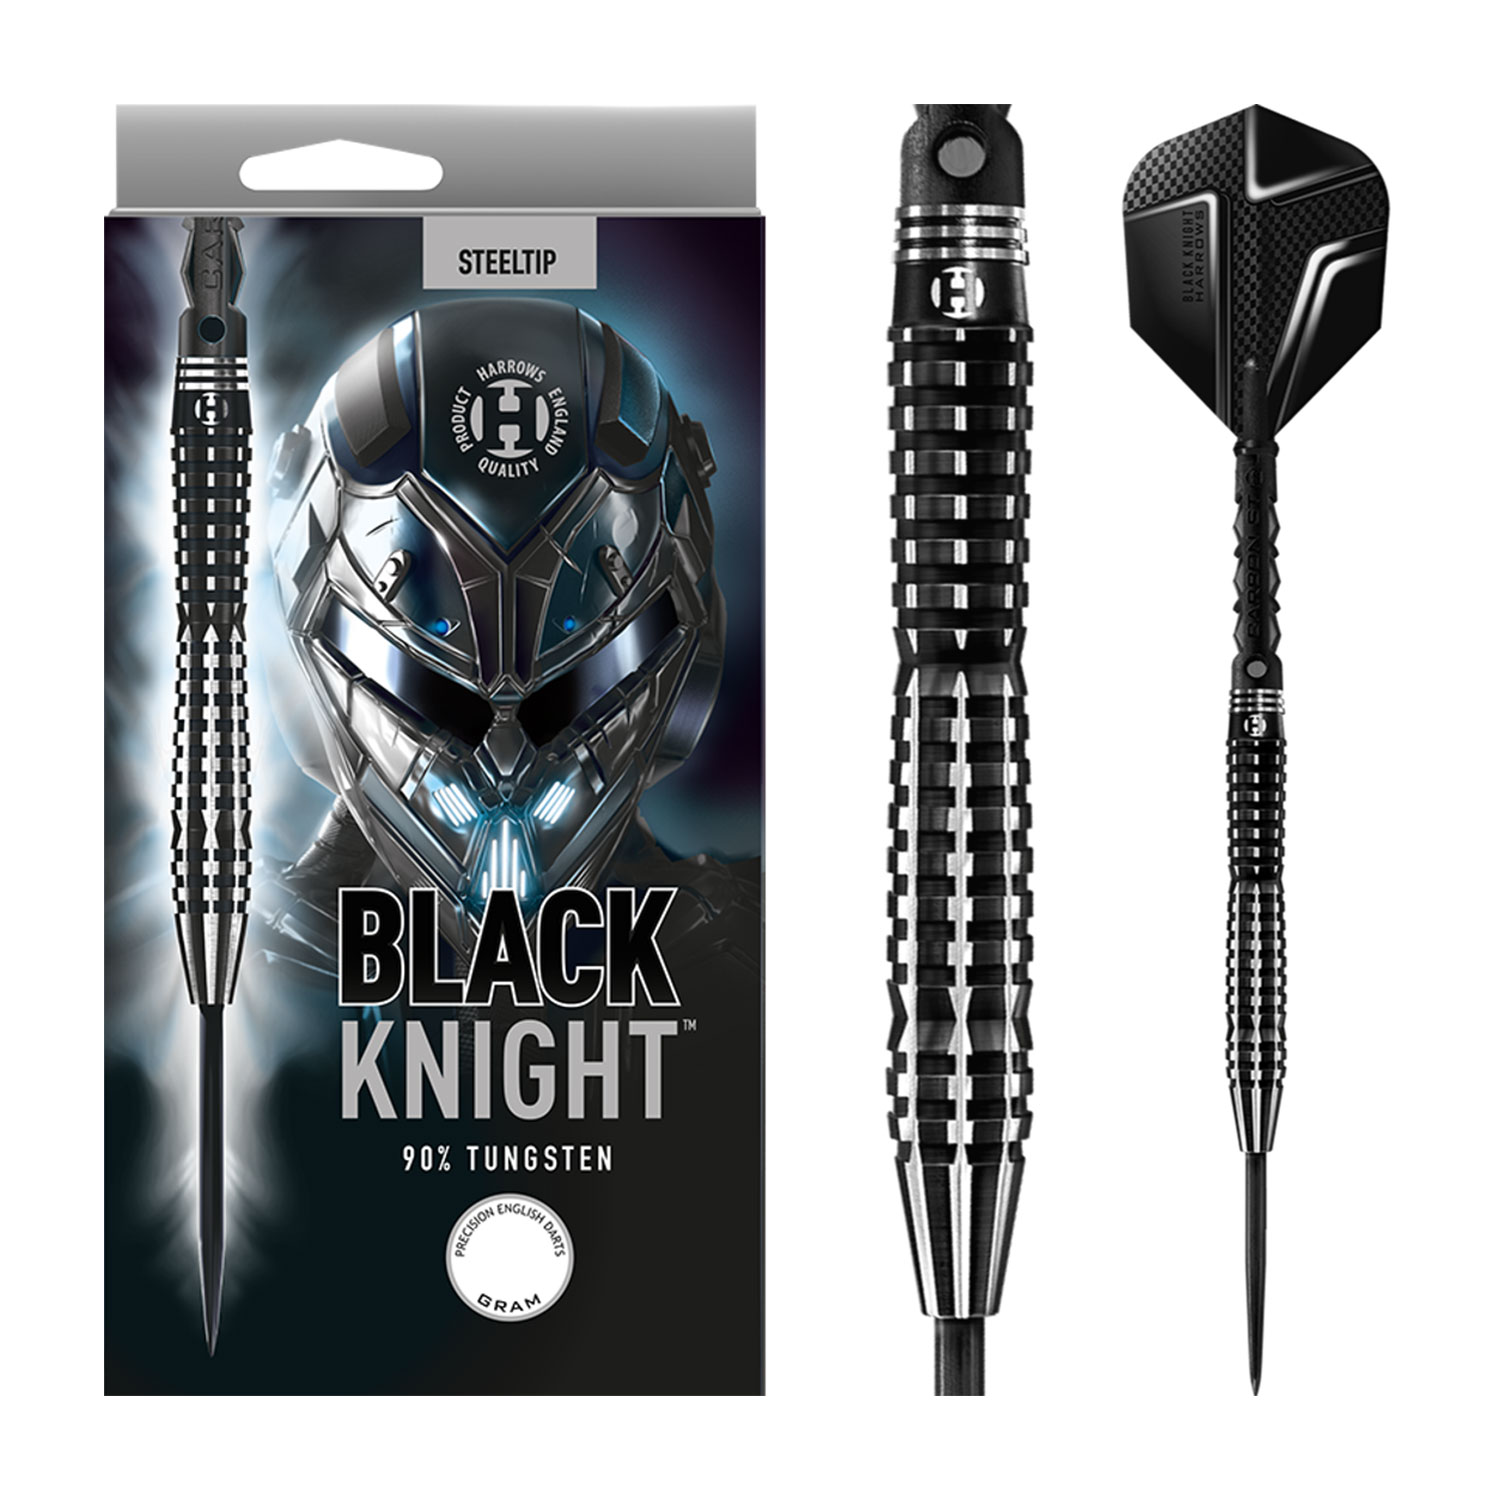 Harrows Black Knight Steeldarts 23g 90% Tungsten von Harrows